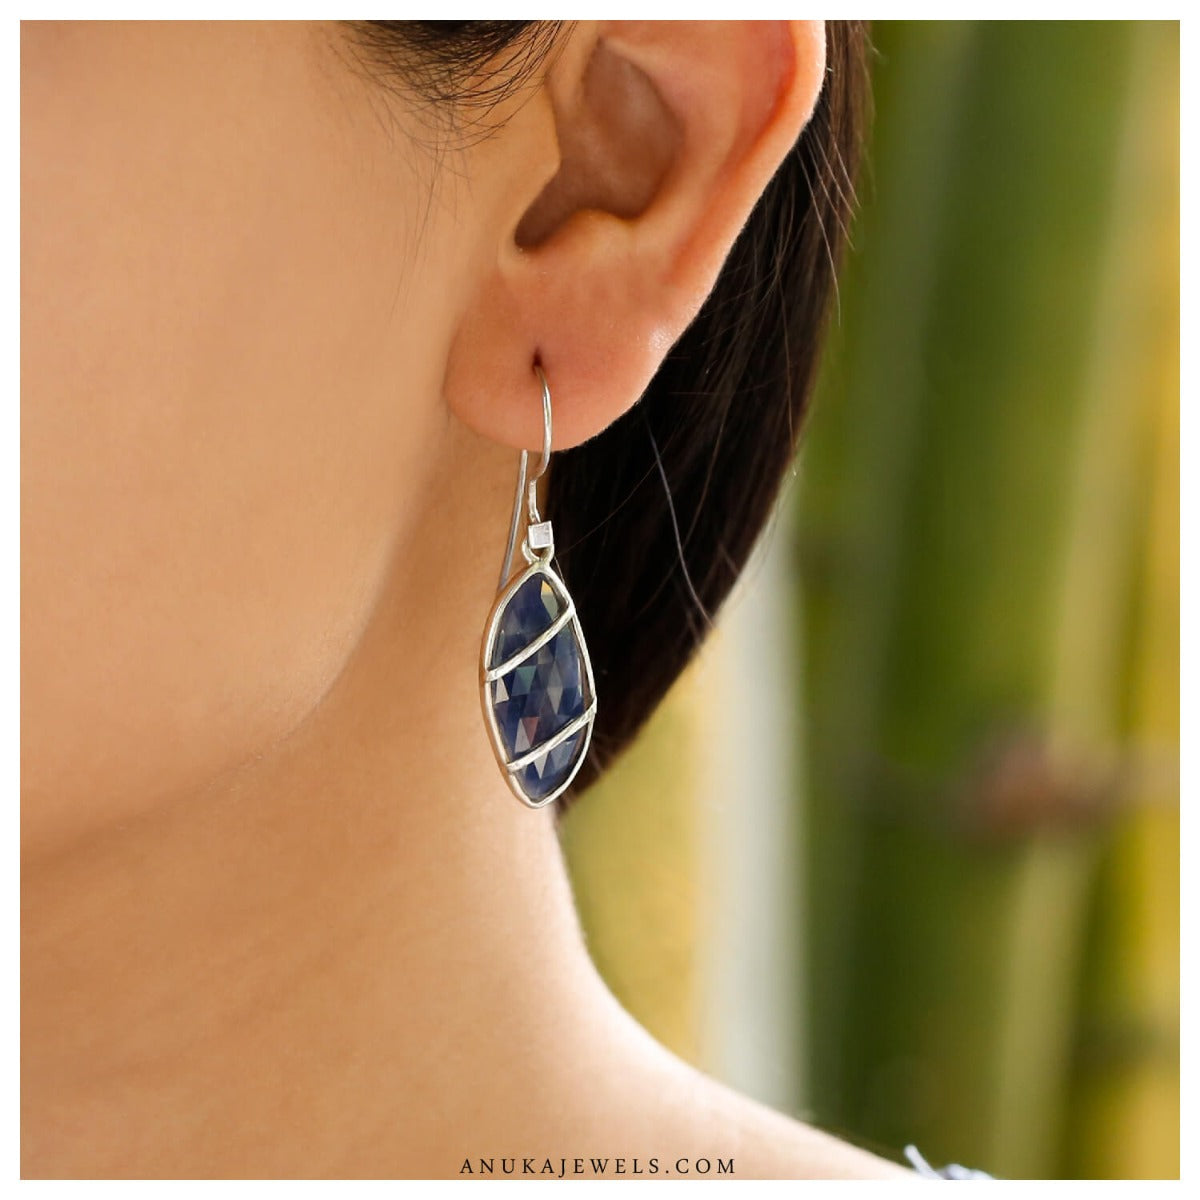 sapphire earrings, silver earrings, sterling silver earrings, buy sapphire earrings, sapphire jewelry, blue earrings